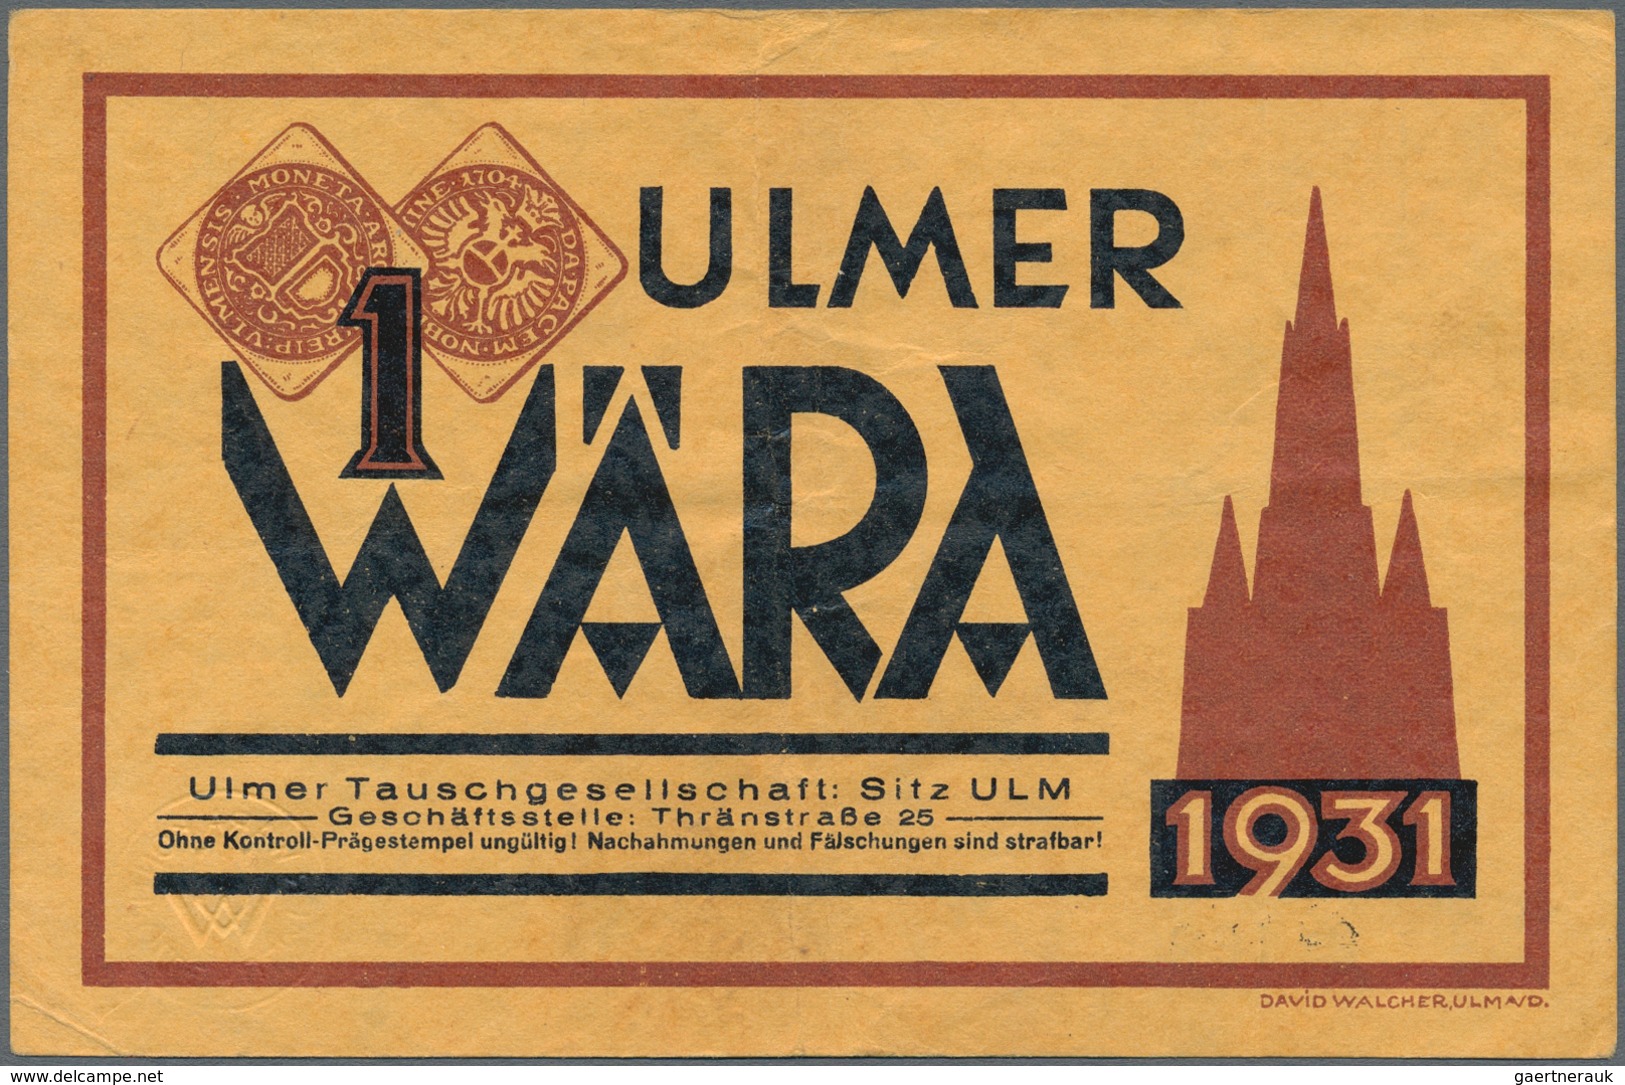 Deutschland - Deutsches Reich bis 1945: Ulmer Wära, set mit 1/2, 2 x 1, 2, 5 und 10 Wära 1931, teils